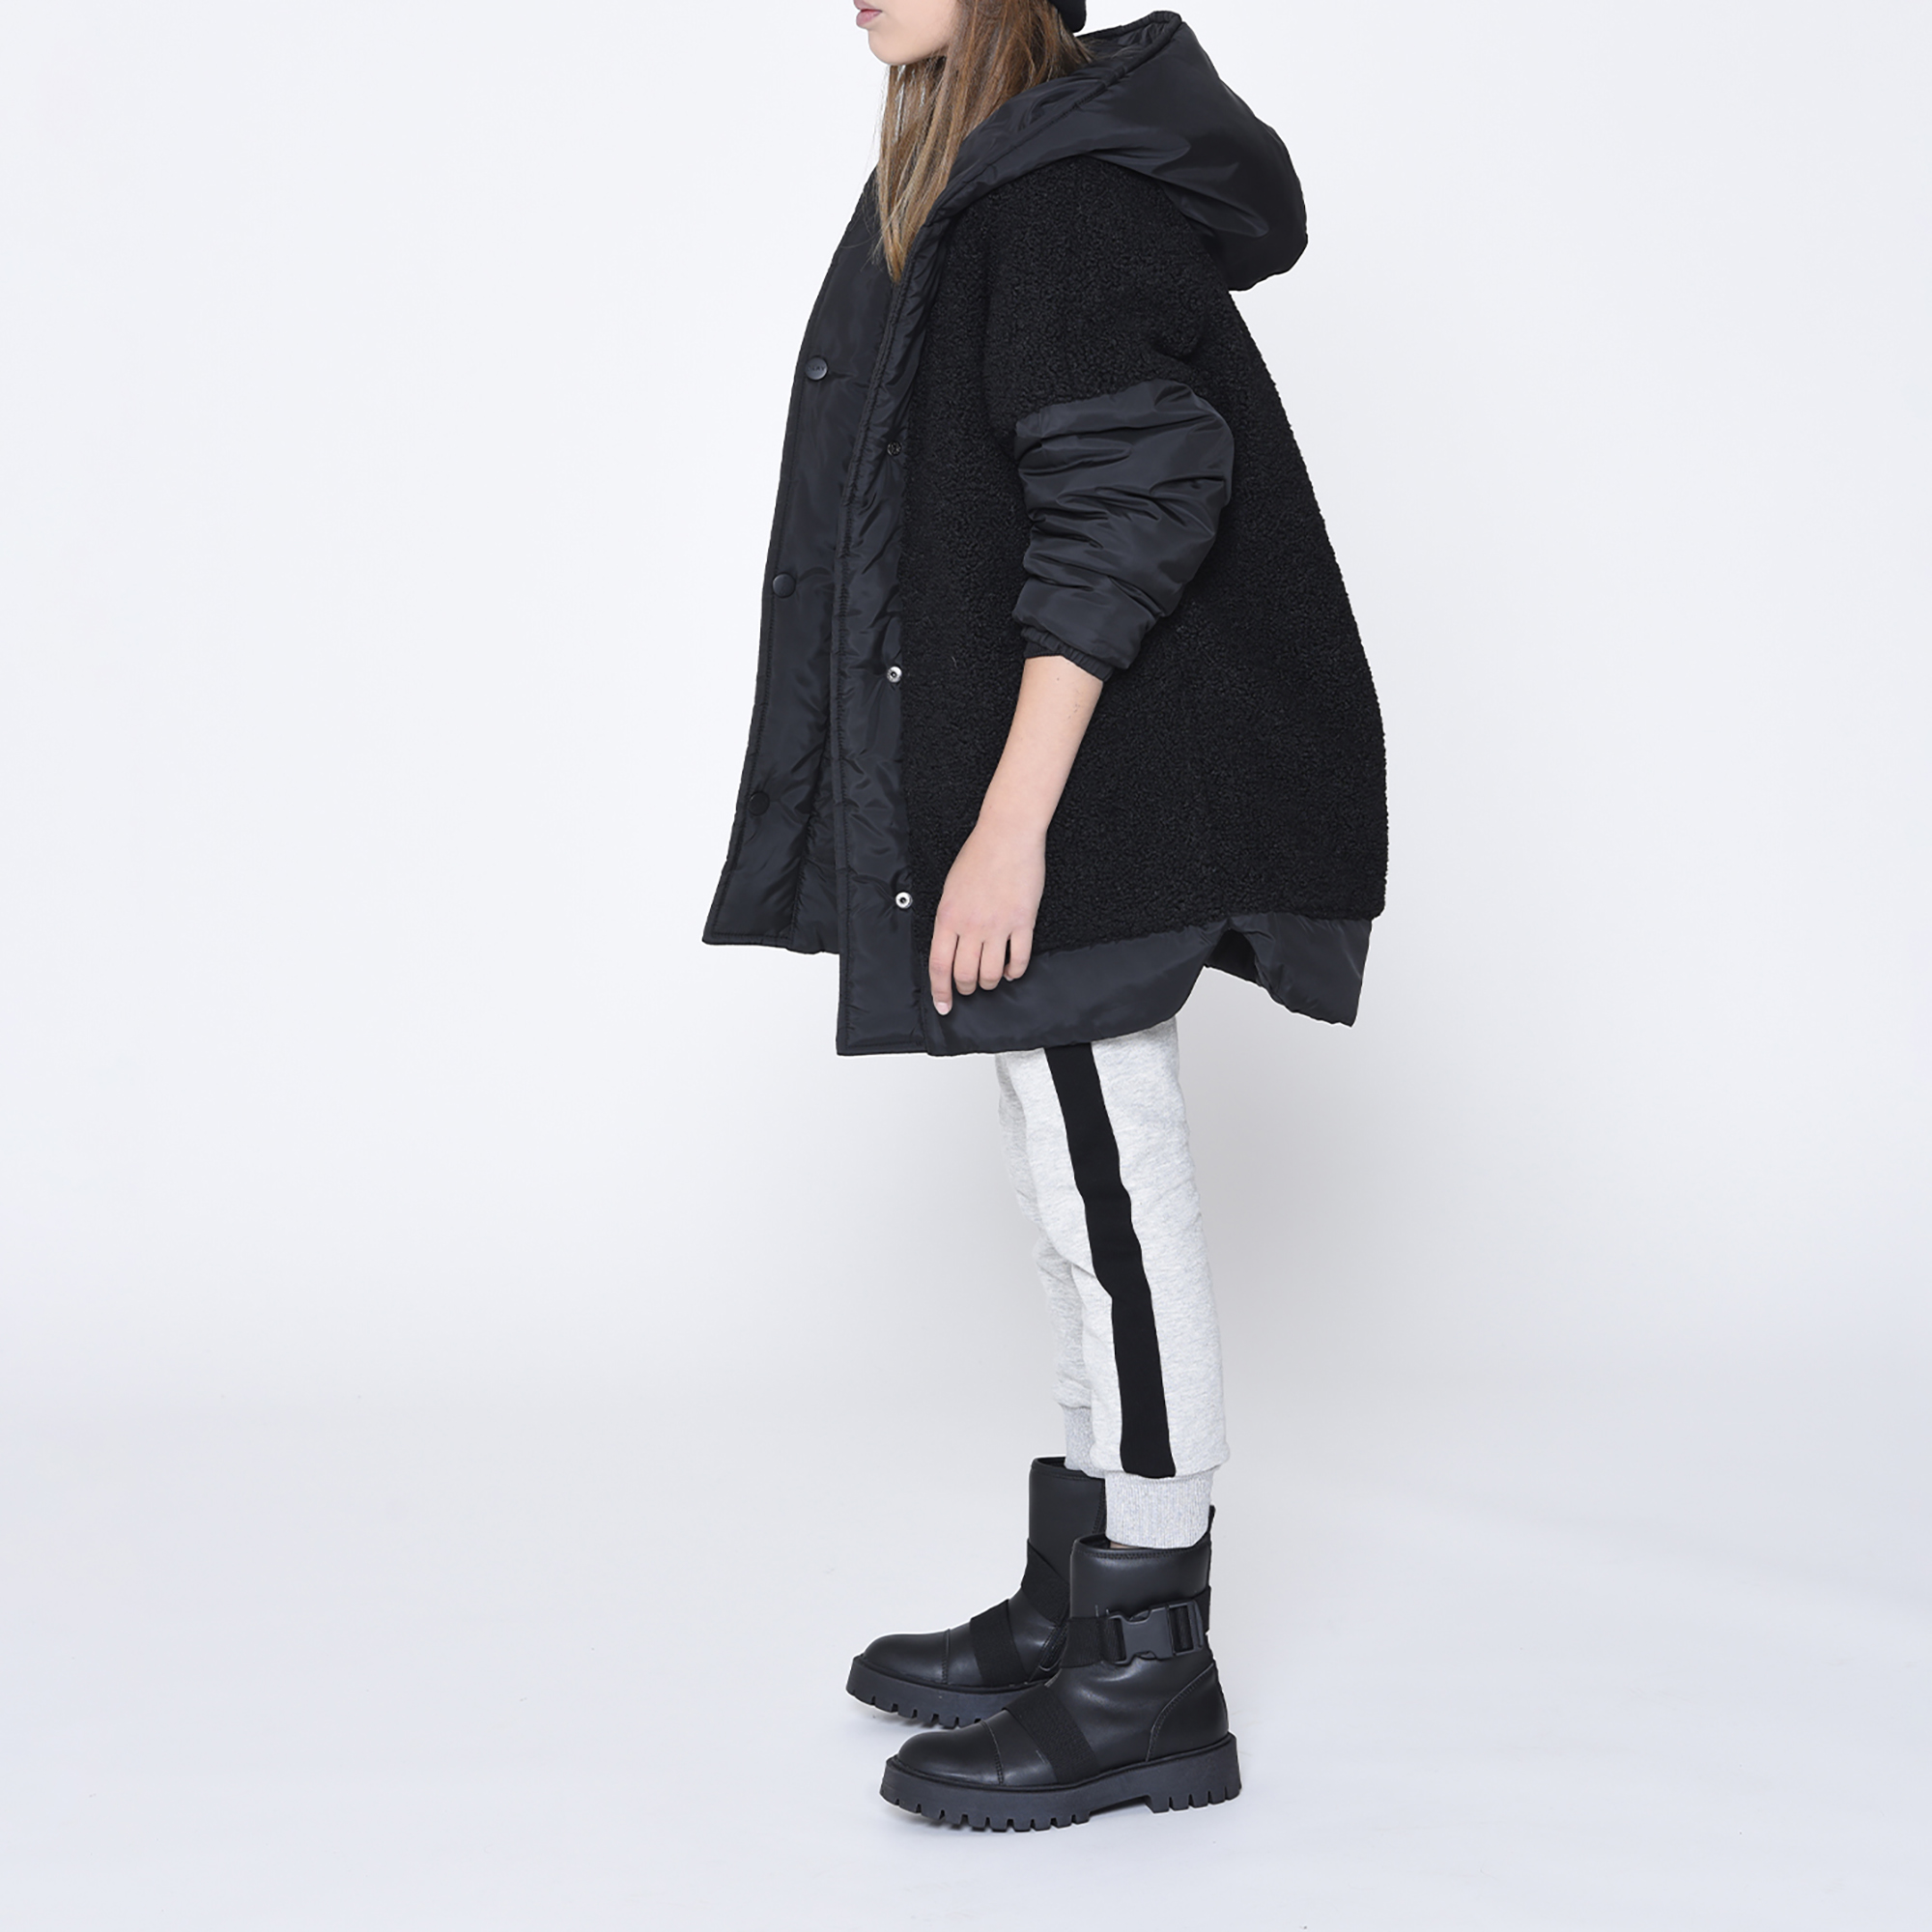 Reversible hooded parka DKNY for GIRL